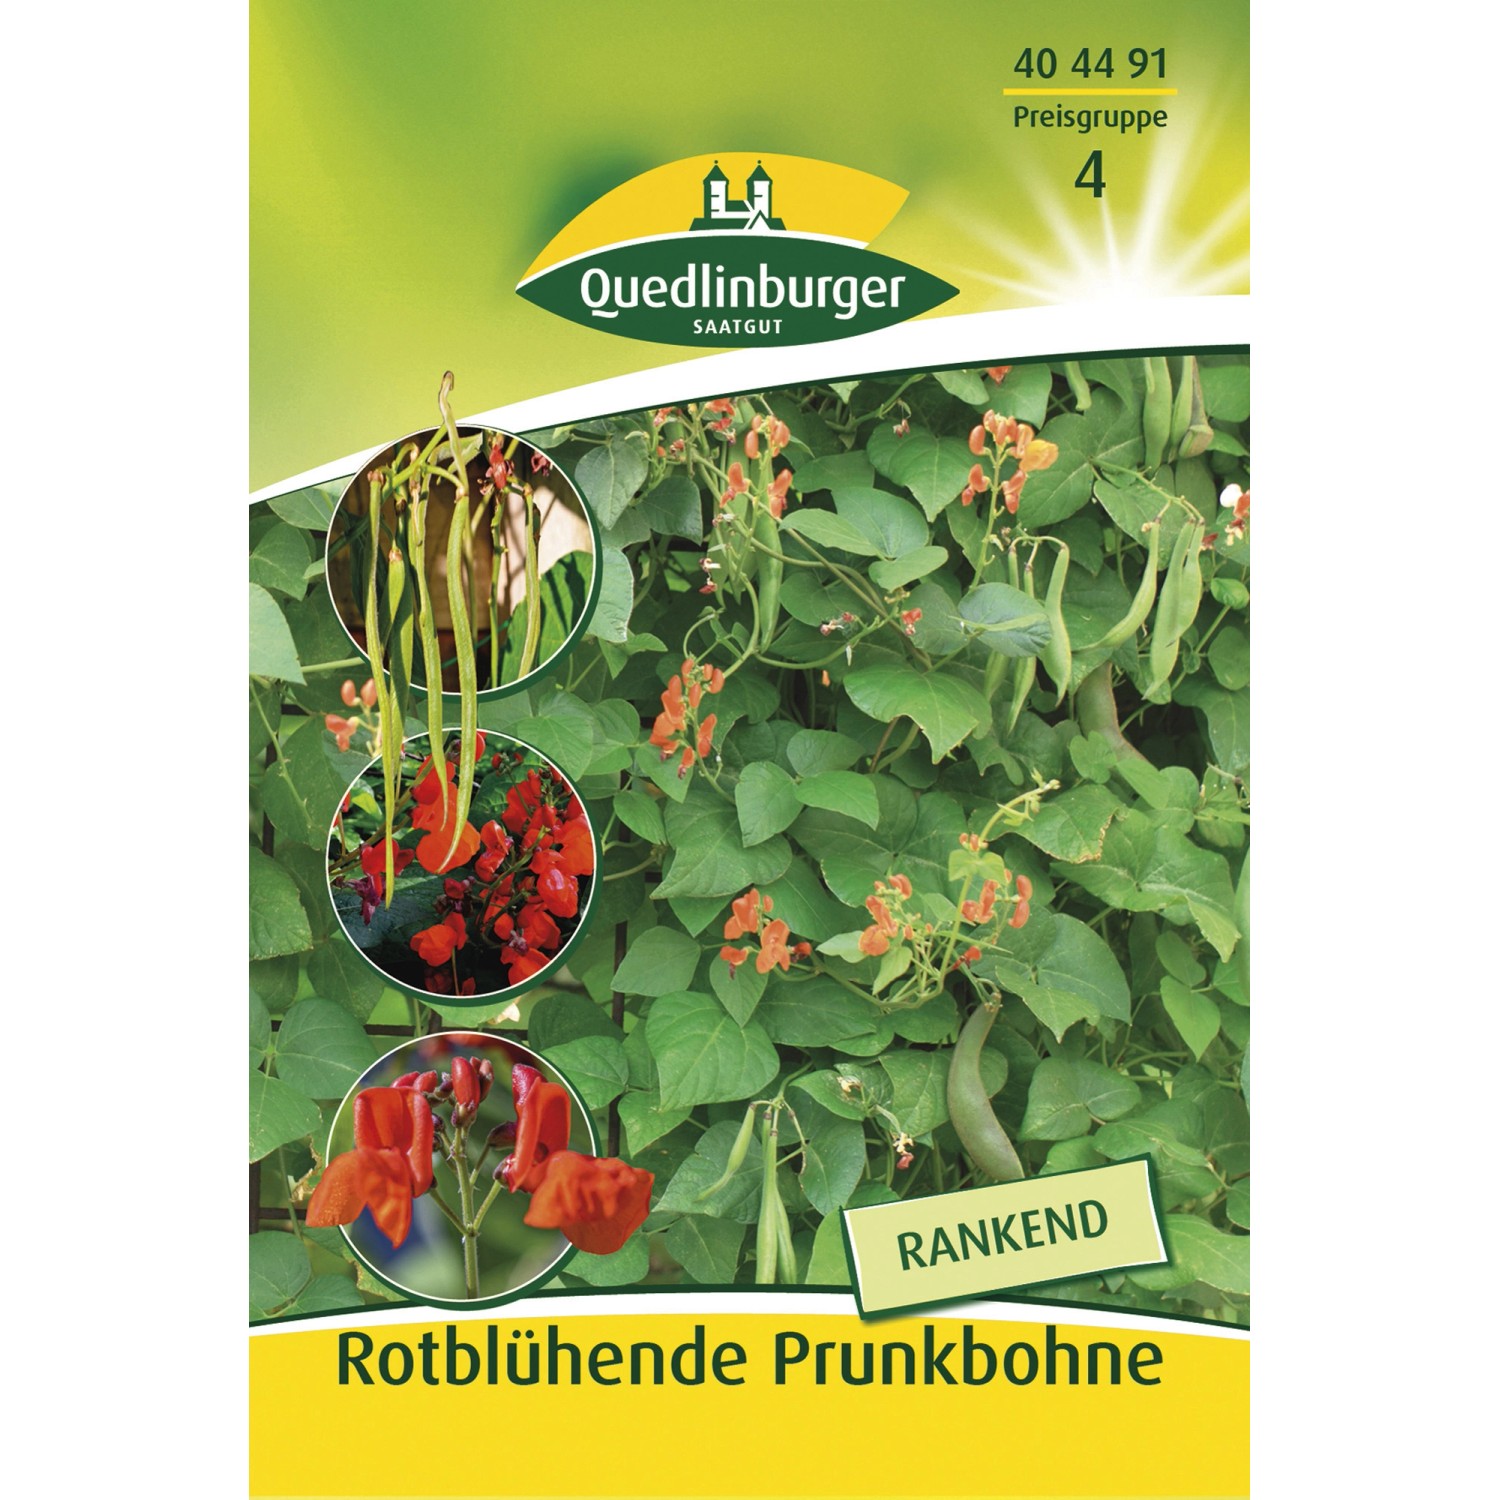 Quedlinburger Rotblühende Prunkbohnen Rankend günstig online kaufen